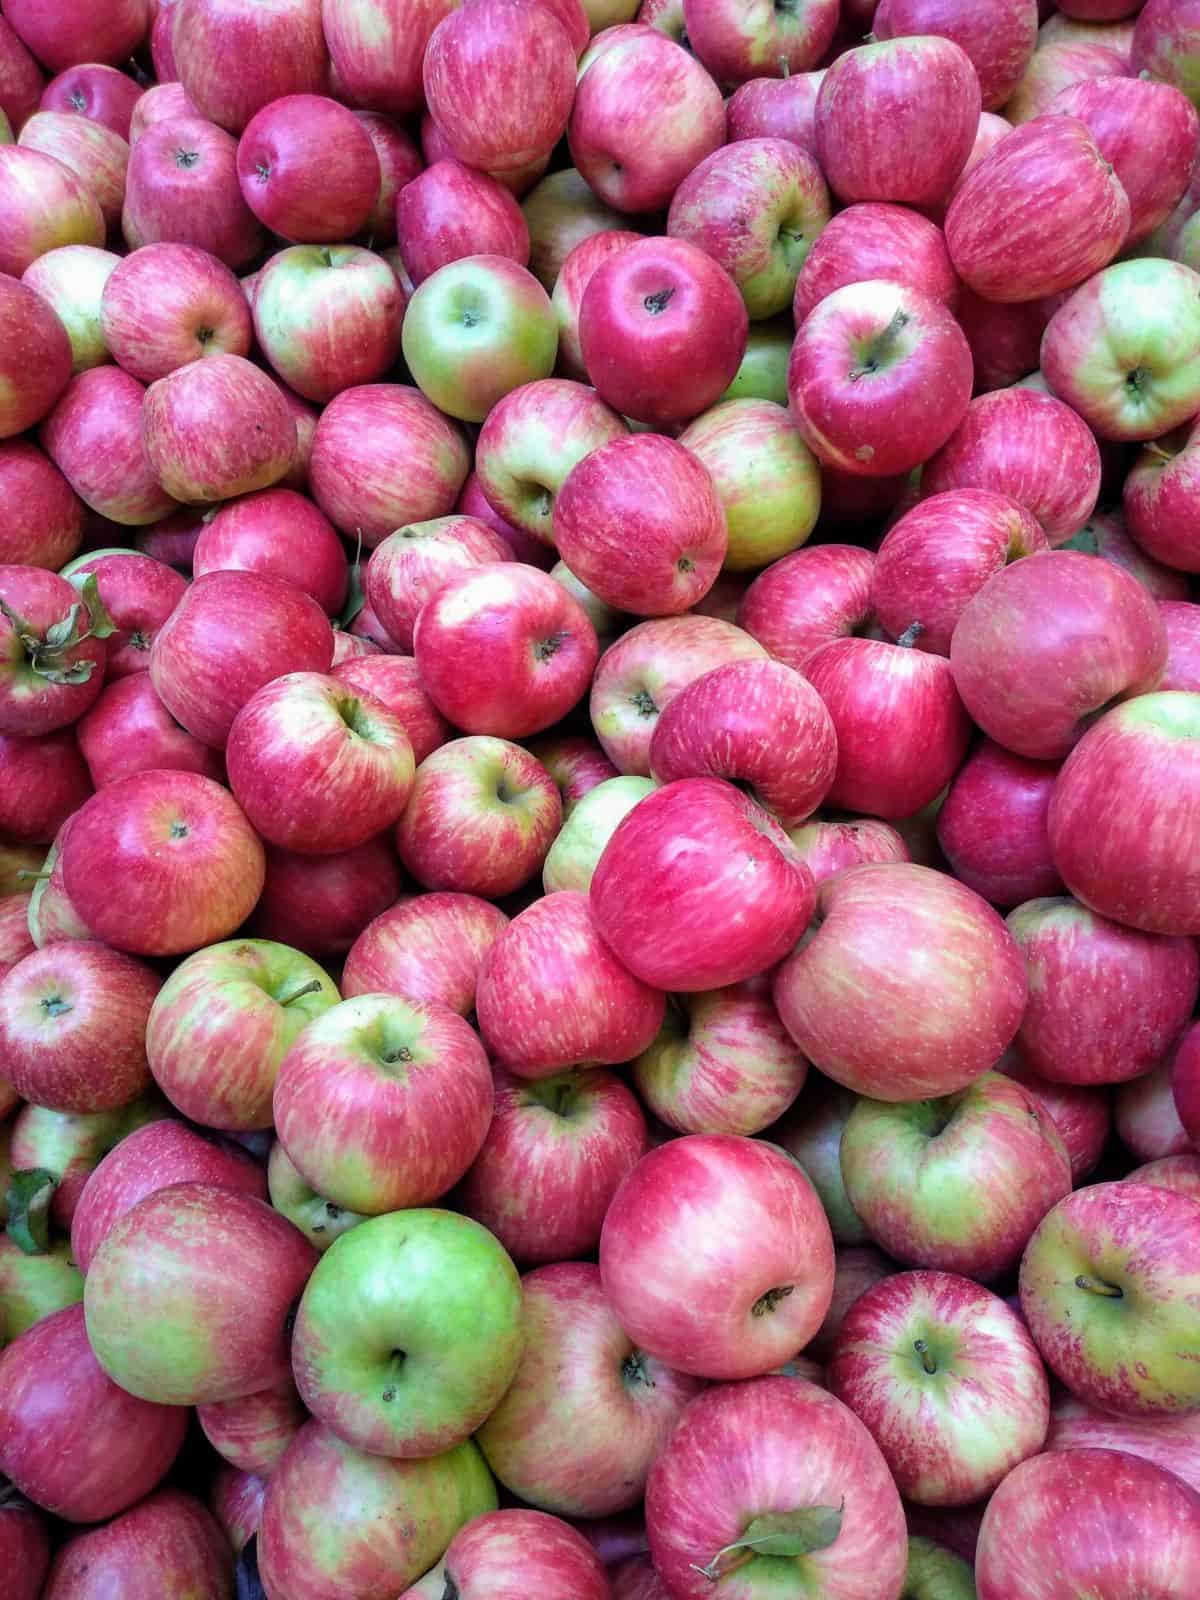 A close up of a bin of Honeycrisp apples at a farmer's market in Oregon.